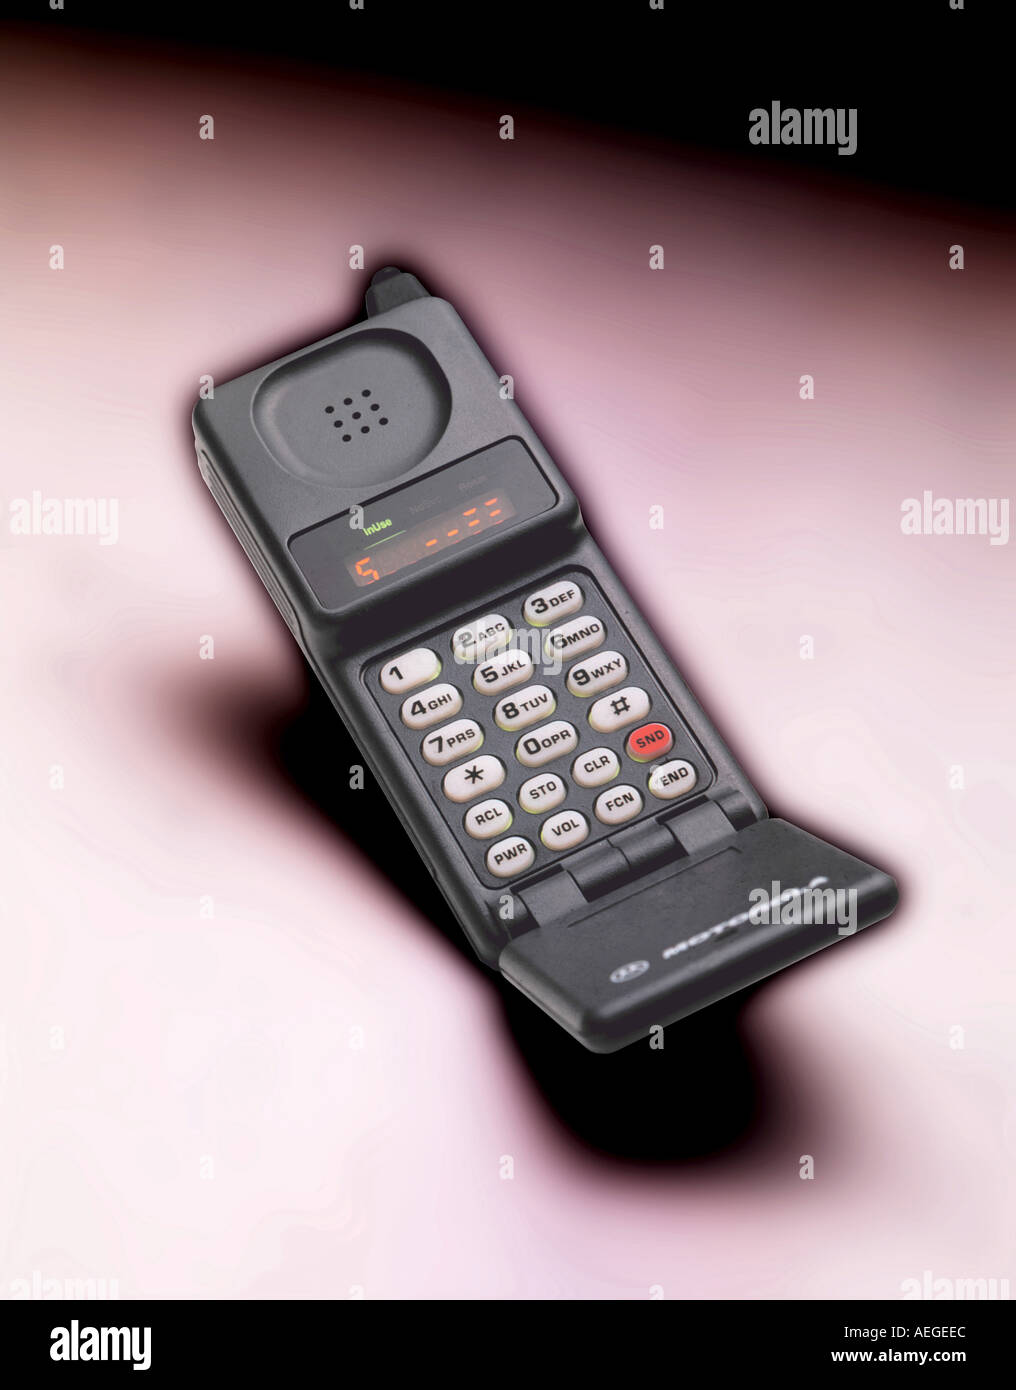 Oficina móvil celular celulares Motorola modelo obsoleto, voltear las teclas  del teclado inalámbrico remoto conversación comunicación conceptual  Fotografía de stock - Alamy